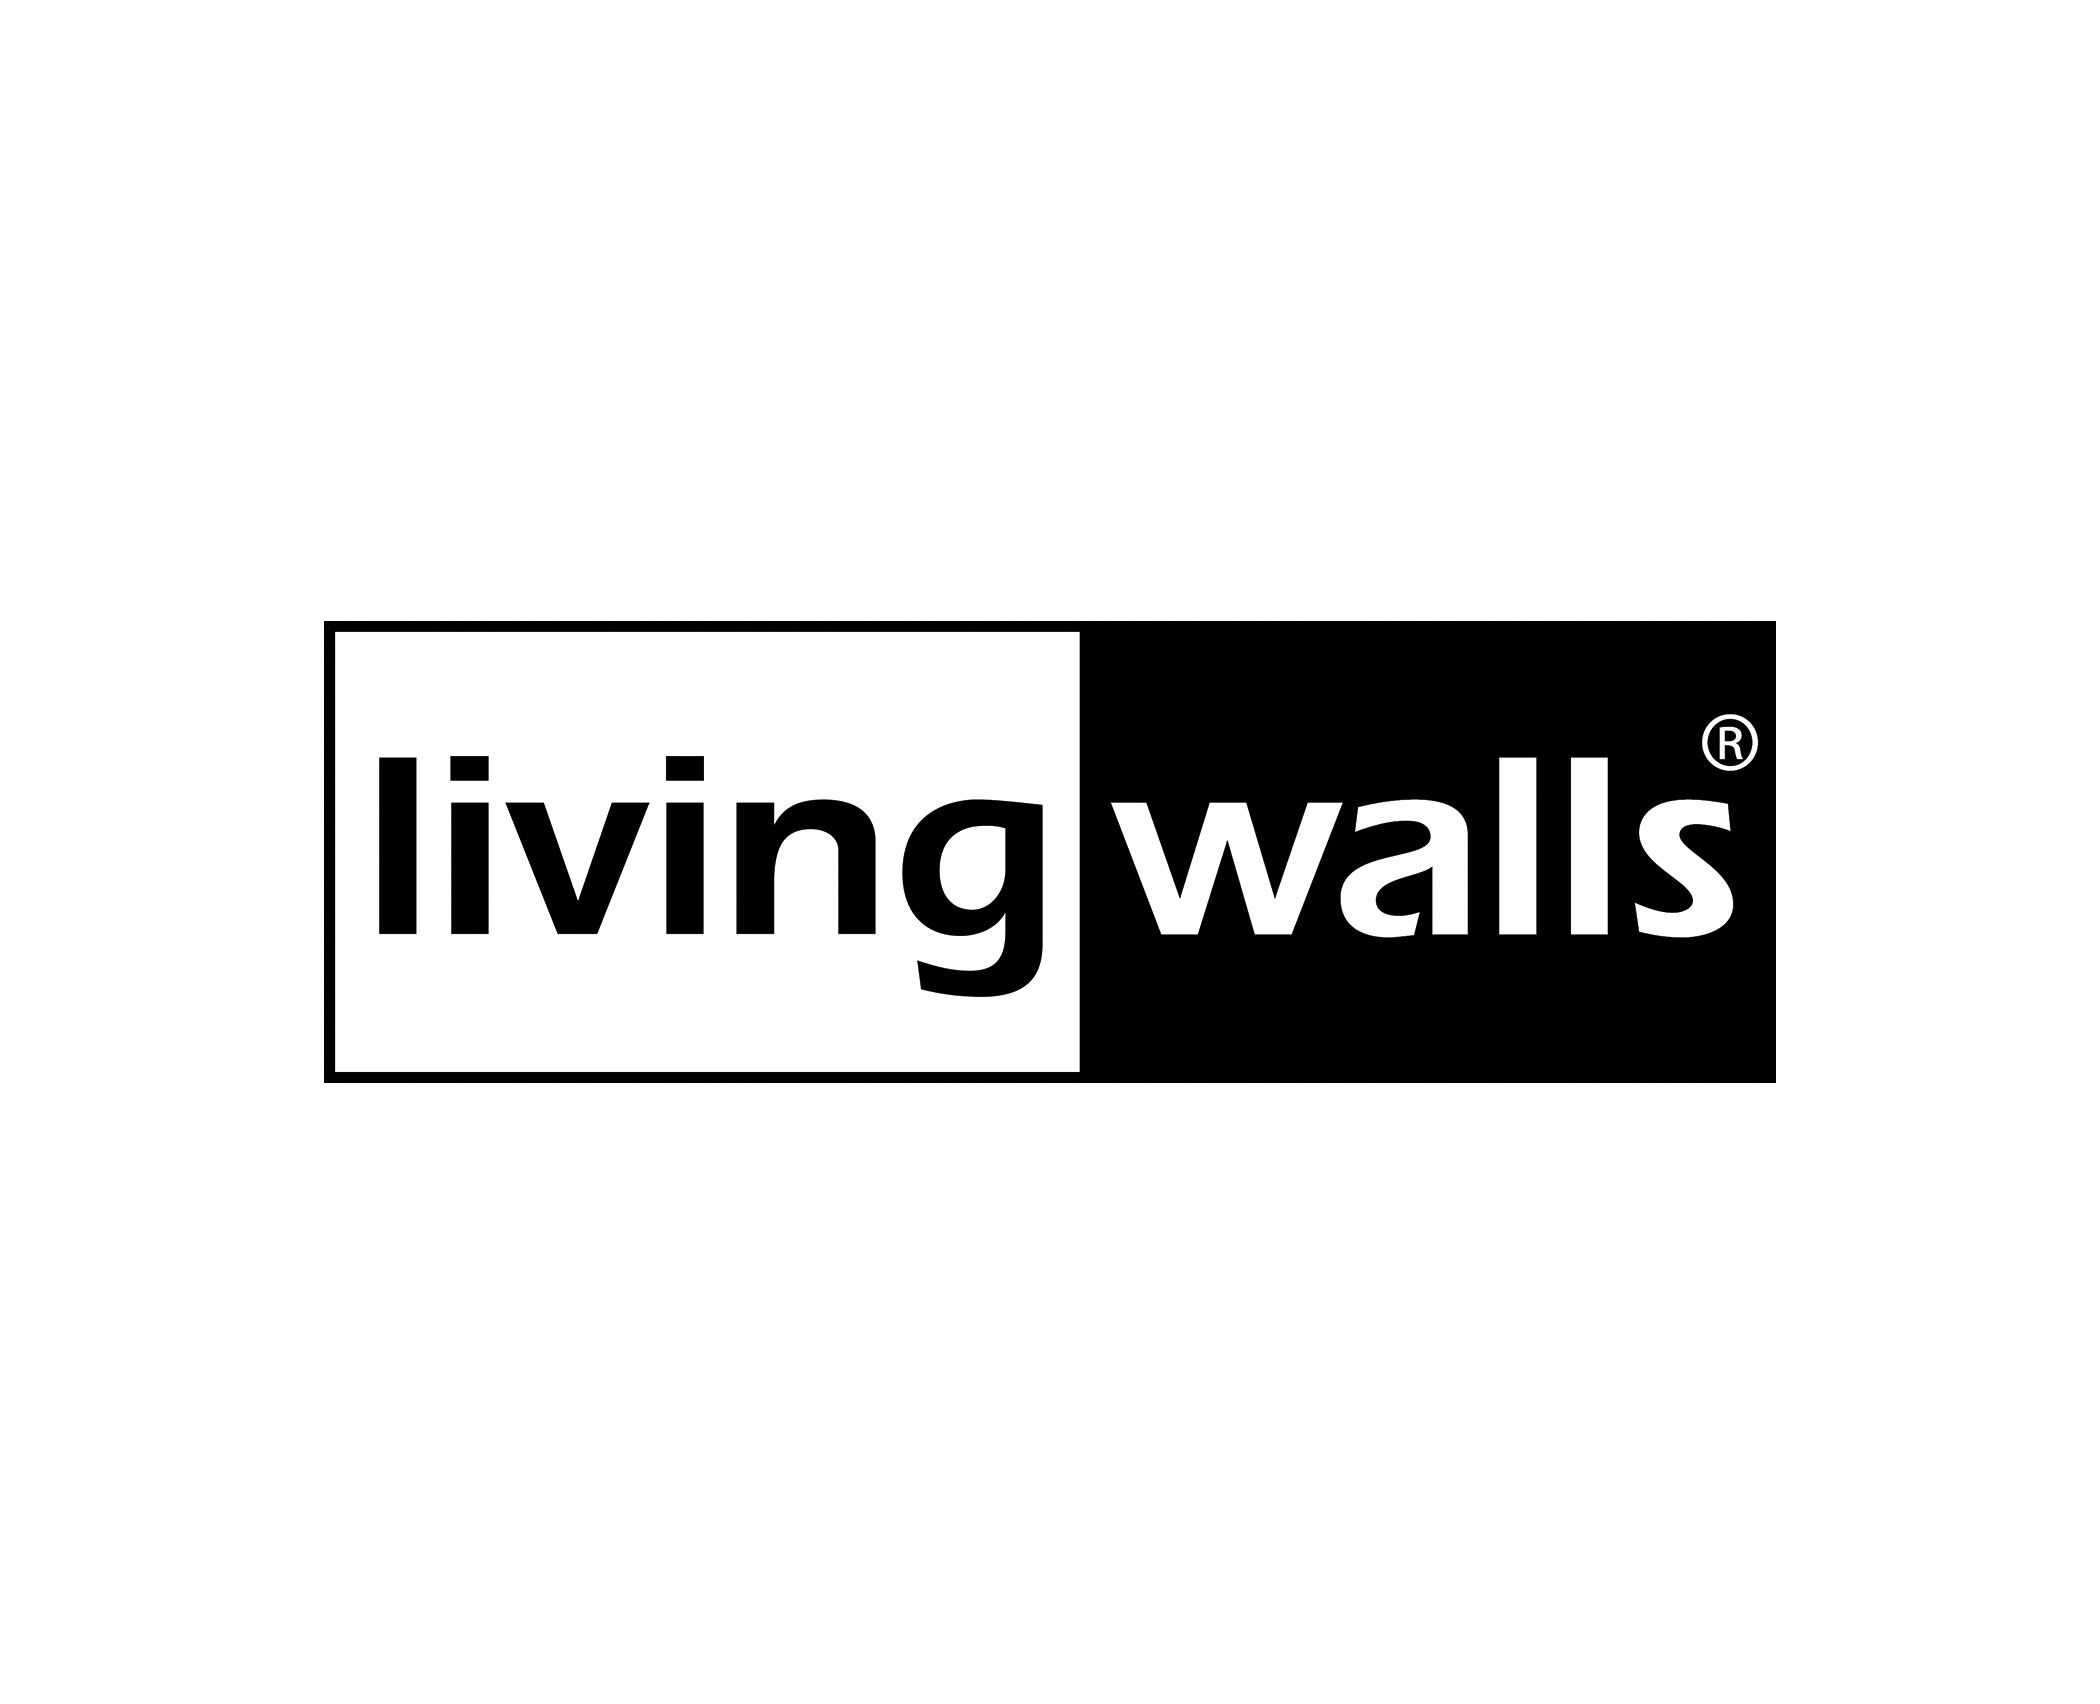 Livingwalls